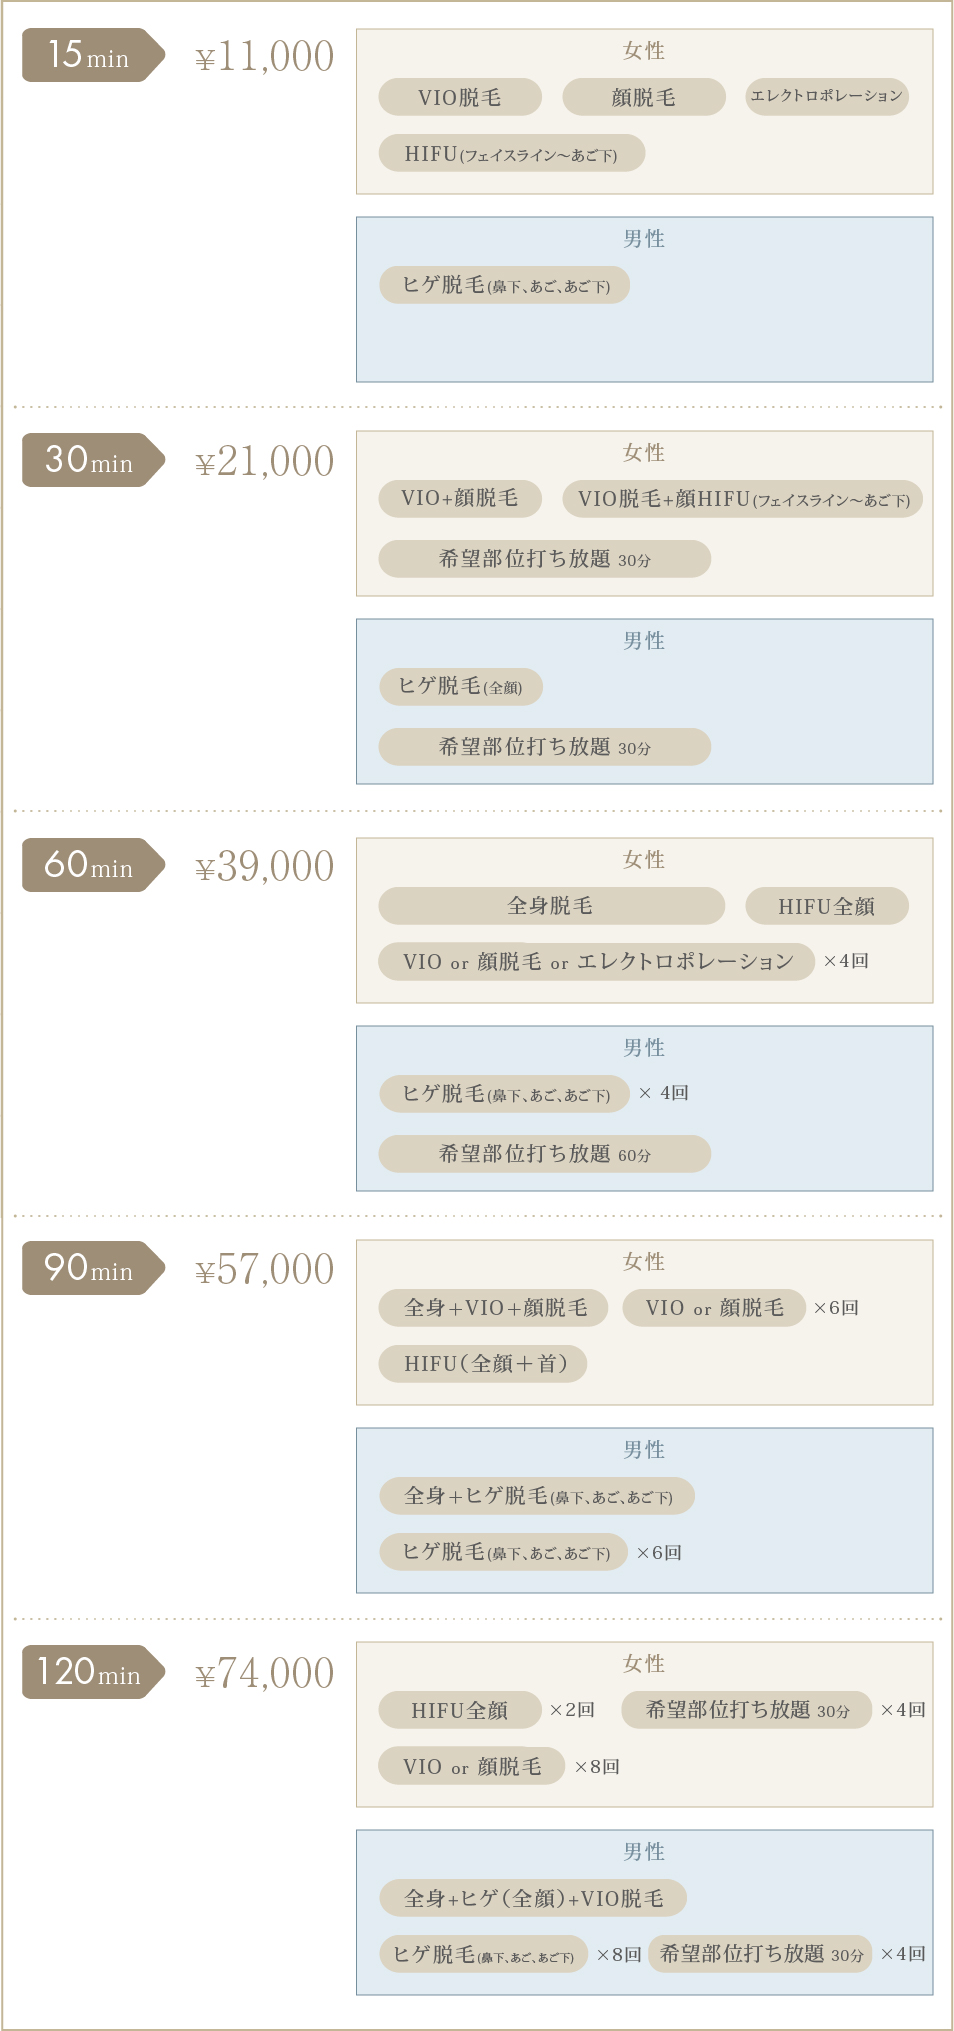 15min(¥11,000)【女性VIO・顔脱毛・エレクトロポレーション・HIFU(フェイスライン～あご下)】【男性ヒゲ(鼻下、あご、あご下)】、30min(¥21,000)、60min(¥39,000)、90min(¥57,000)、120min(¥74,000)